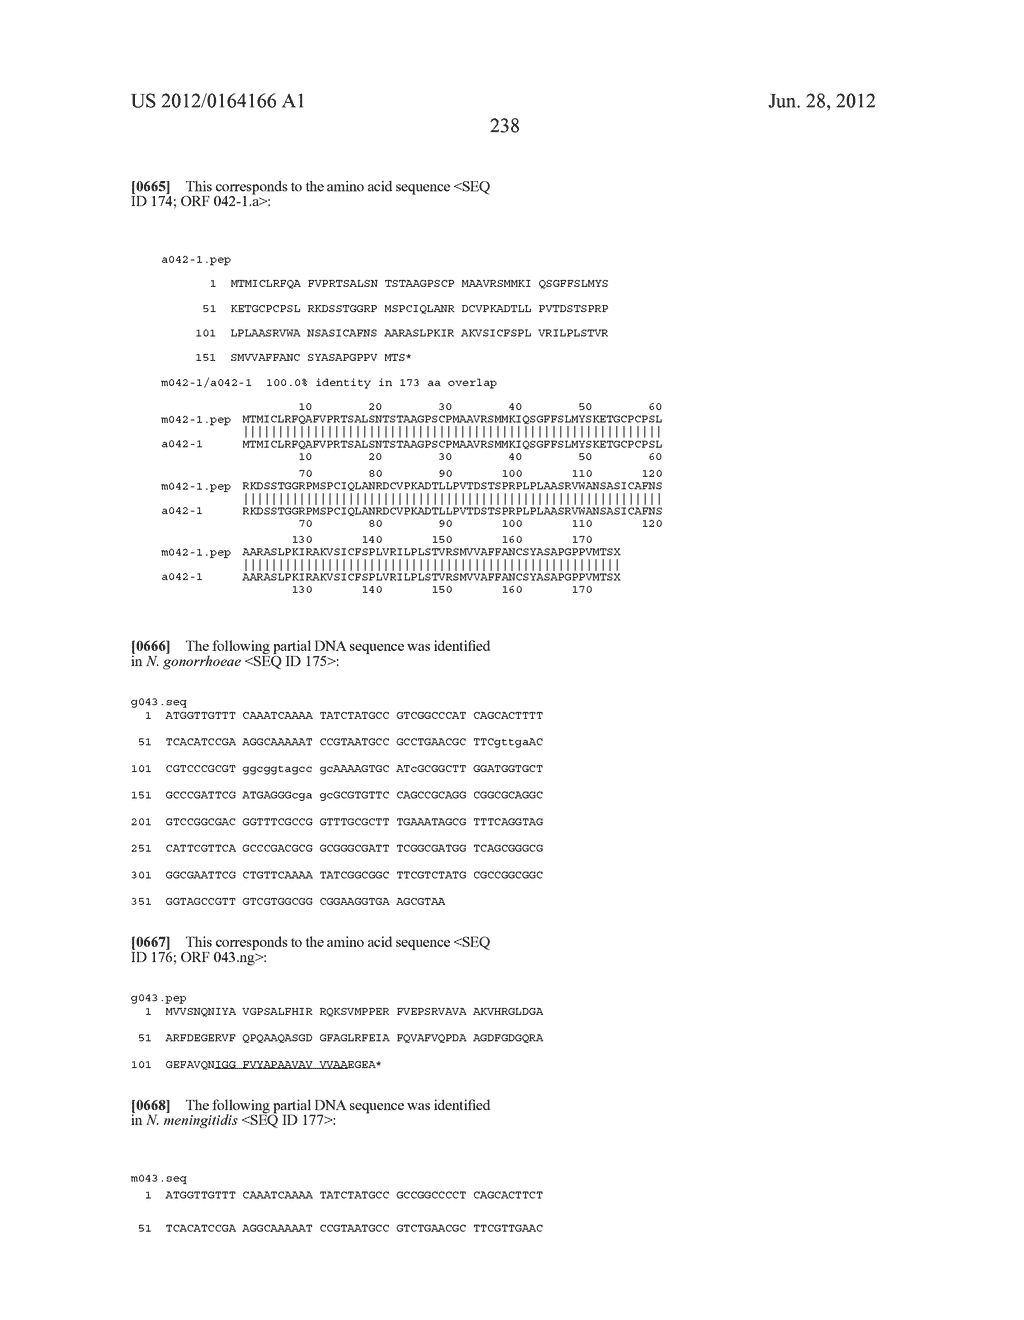 NEISSERIA MENINGITIDIS ANTIGENS AND COMPOSITIONS - diagram, schematic, and image 270